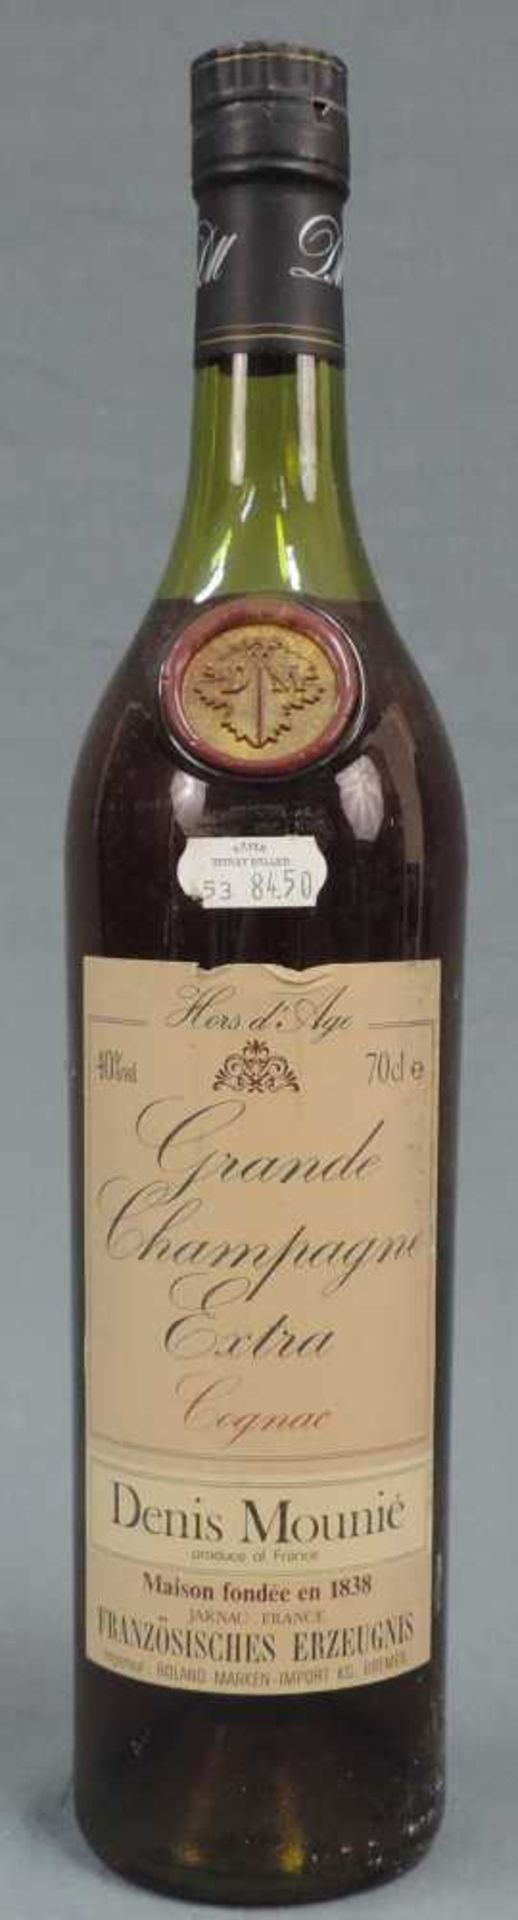 Denis Mounié Grande Champagne Extra Cognac. Maison Fondée en 1838. 70cl. 40%. Denis Mounié Grande